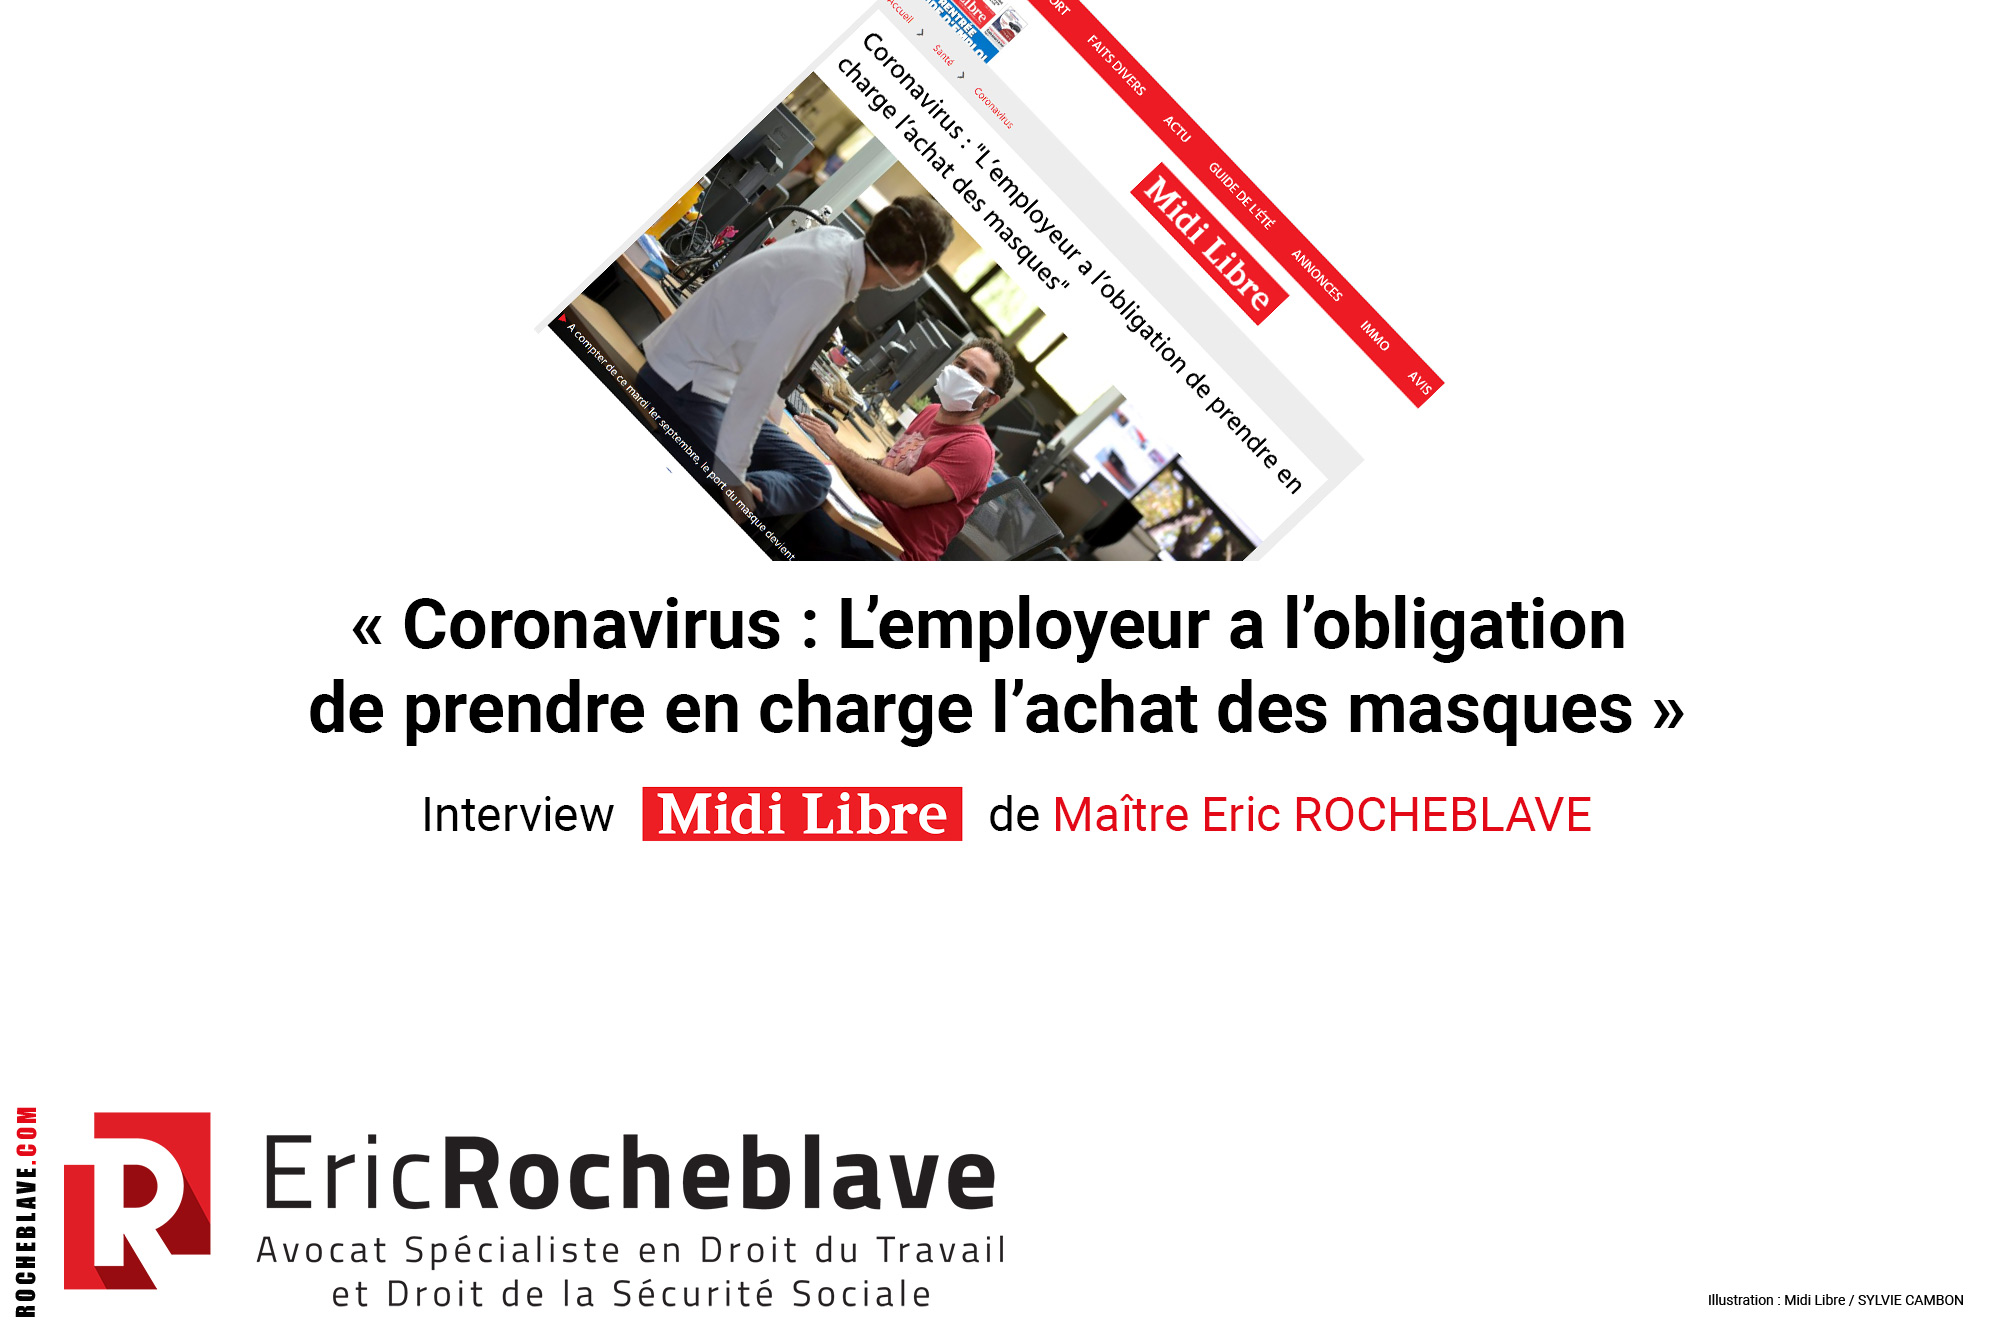 « Coronavirus : L’employeur a l’obligation de prendre en charge l’achat des masques » ​Interview Midi Libre de Maître Eric ROCHEBLAVE